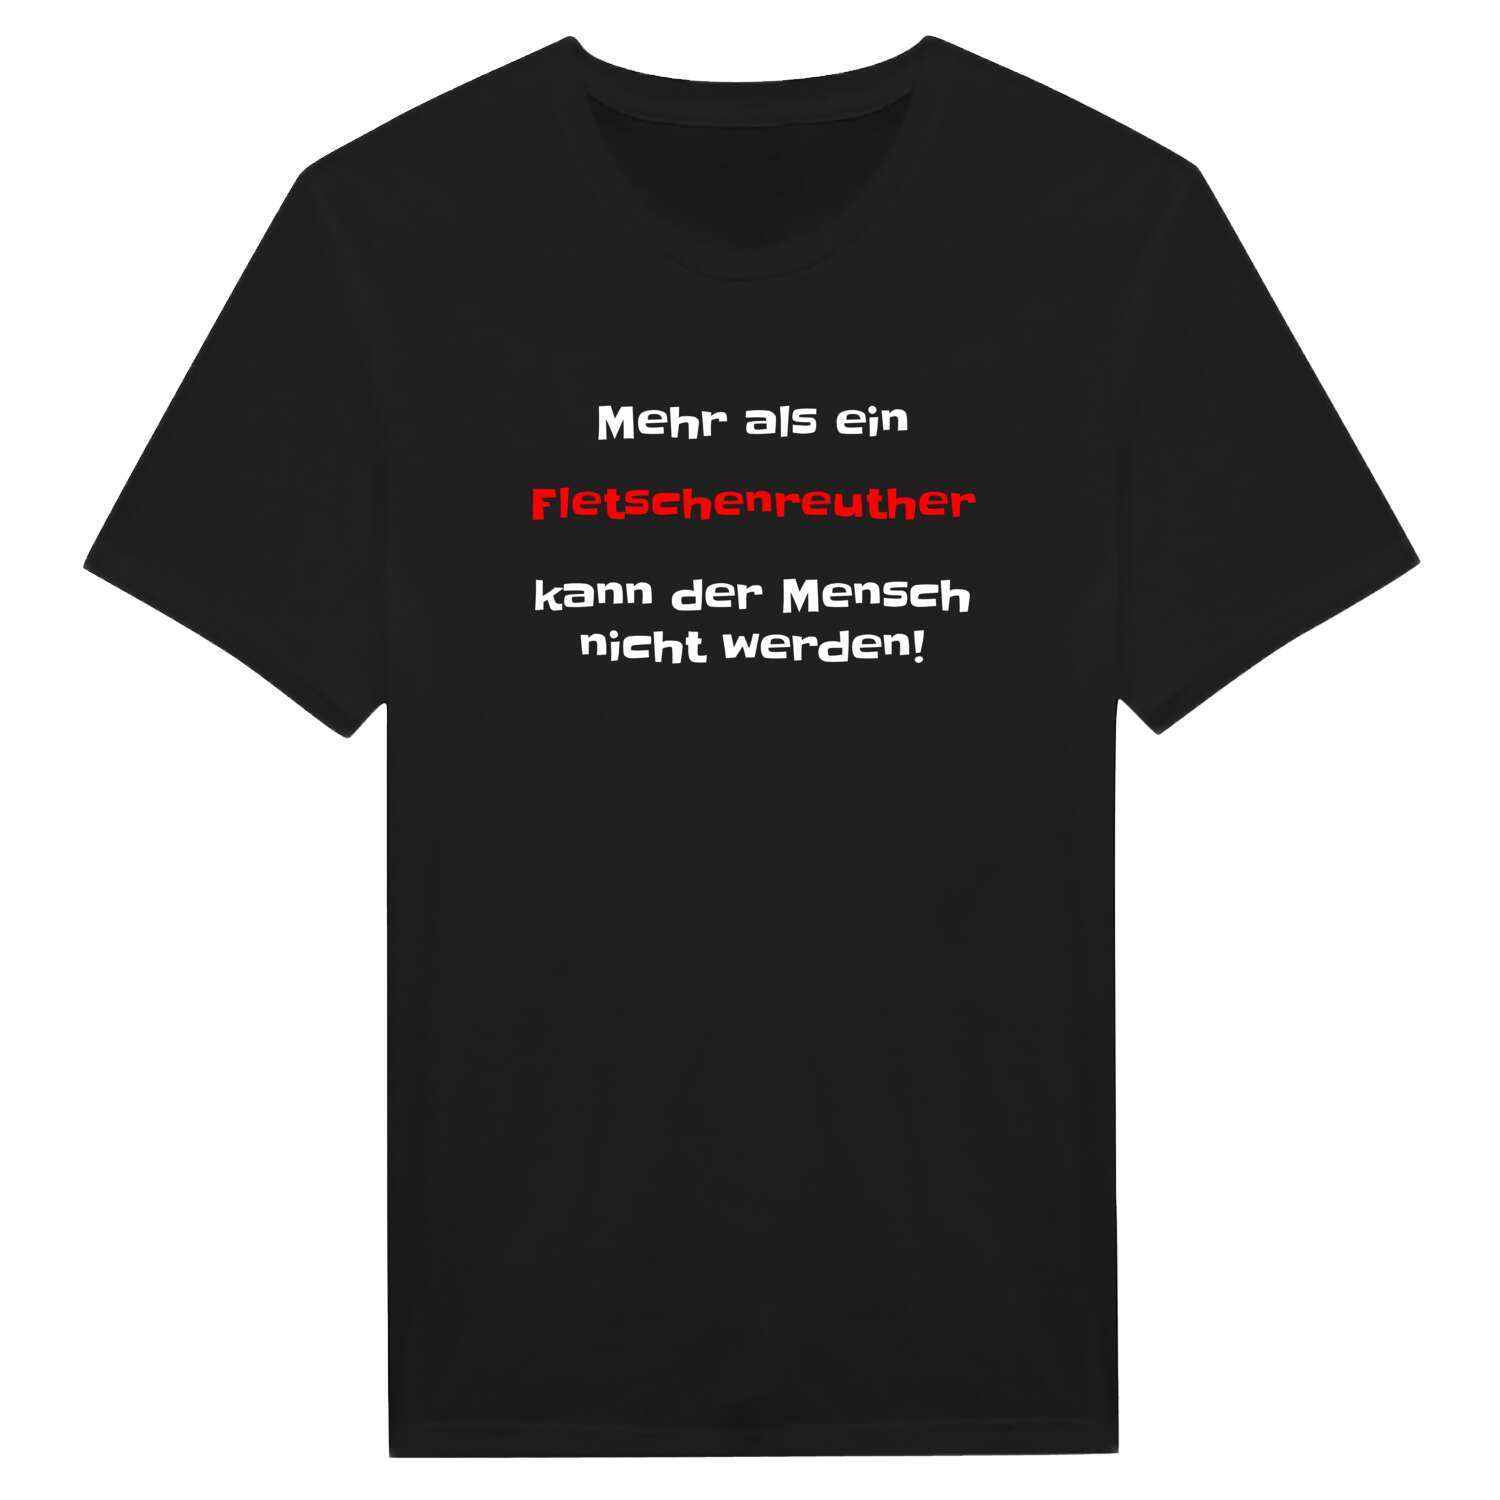 Fletschenreuth T-Shirt »Mehr als ein«